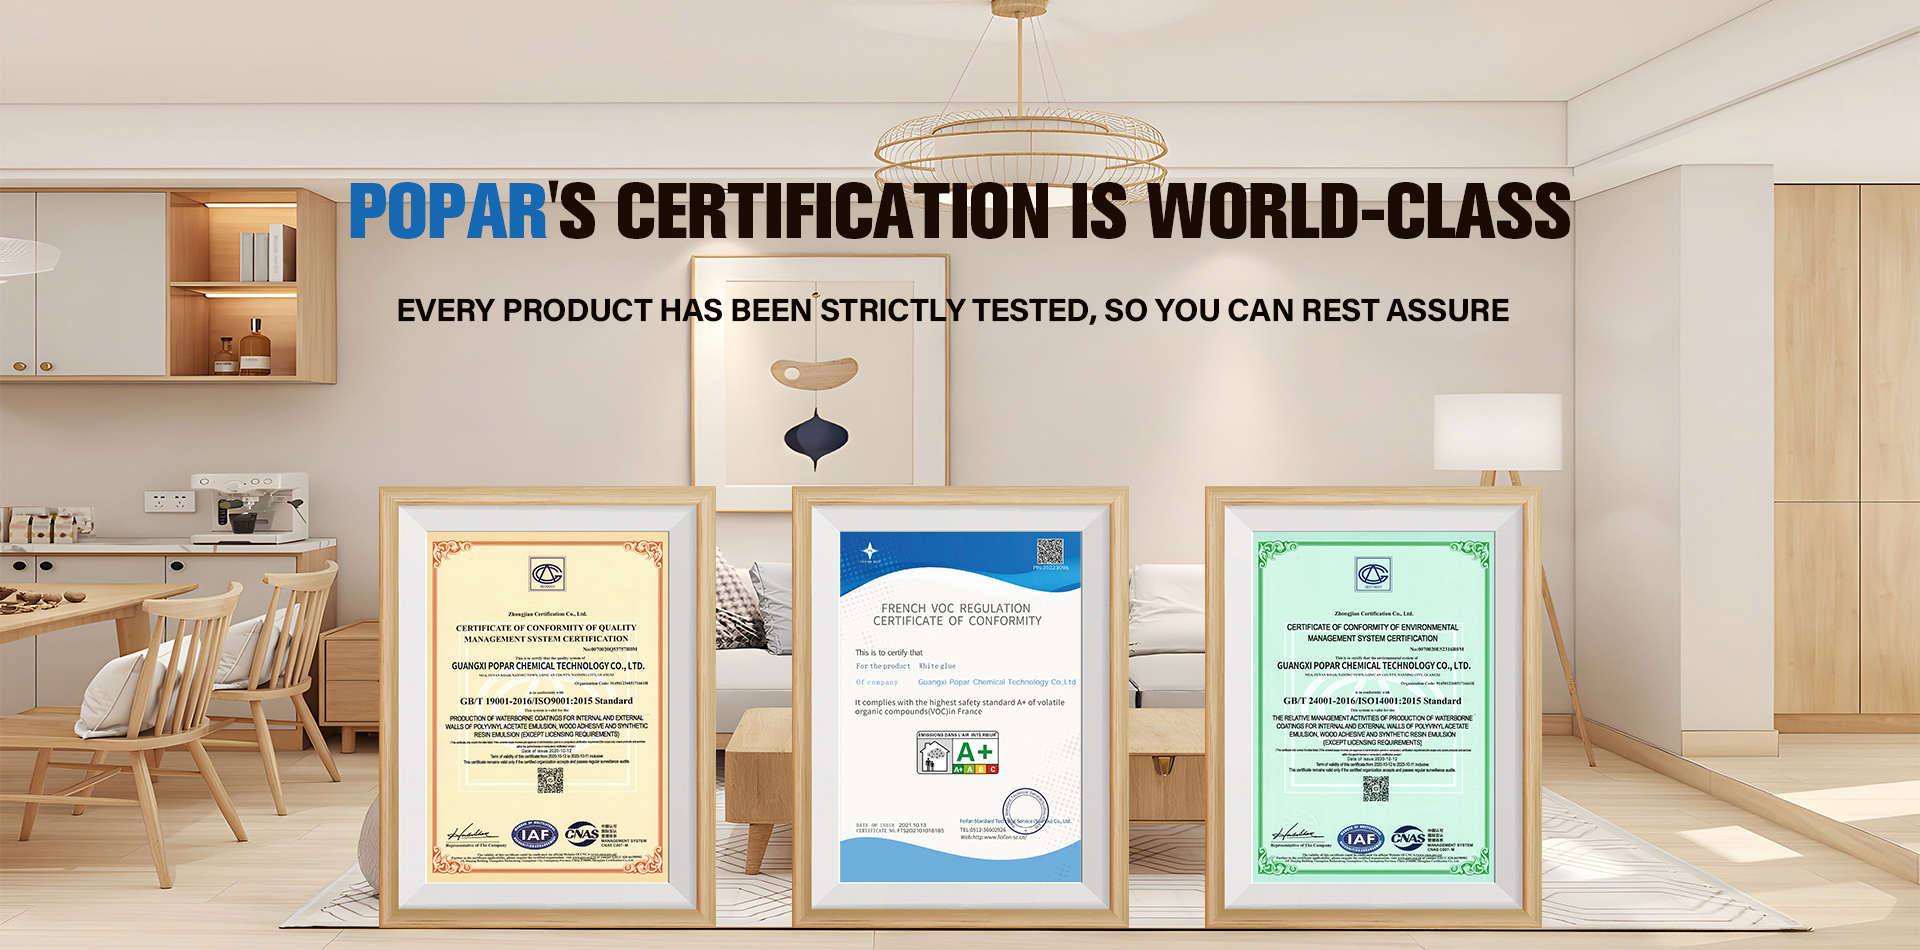 Certifikácia spoločnosti Popar je na svetovej úrovni